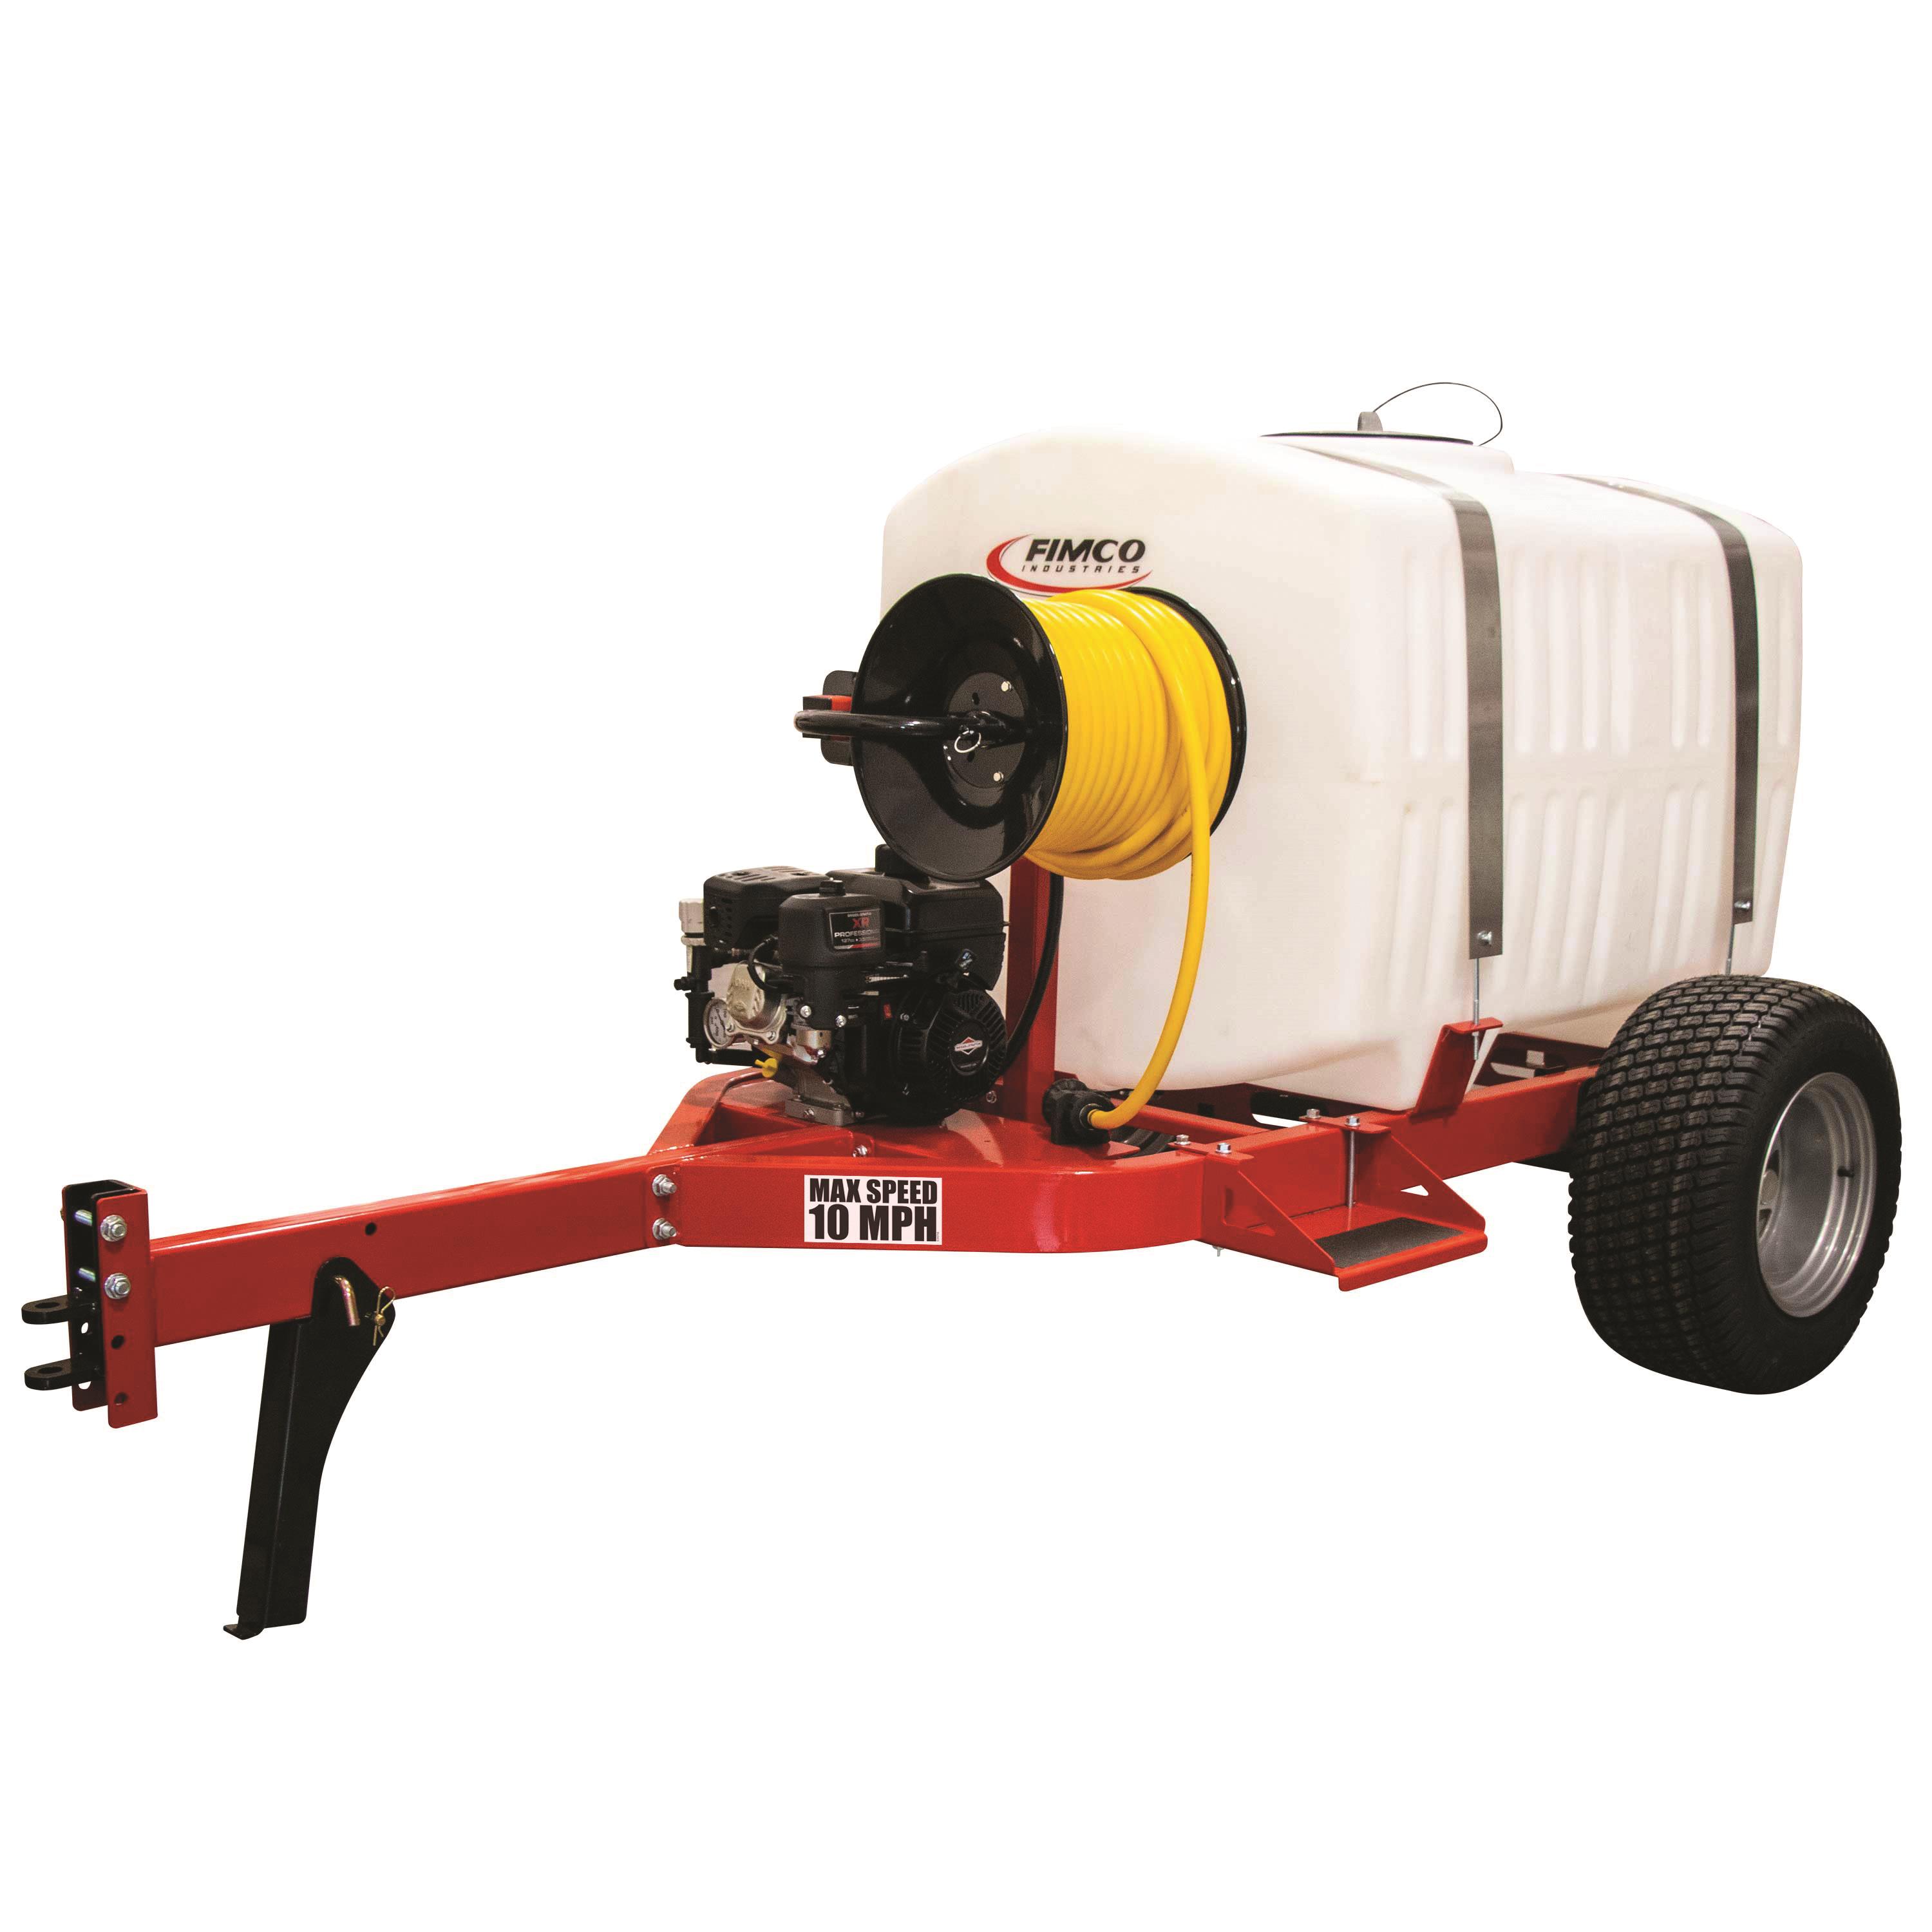 FIMCO 25 Gallon Value ATV Sprayer with 2.4 GPM Pump and 3 Nozzle Boom